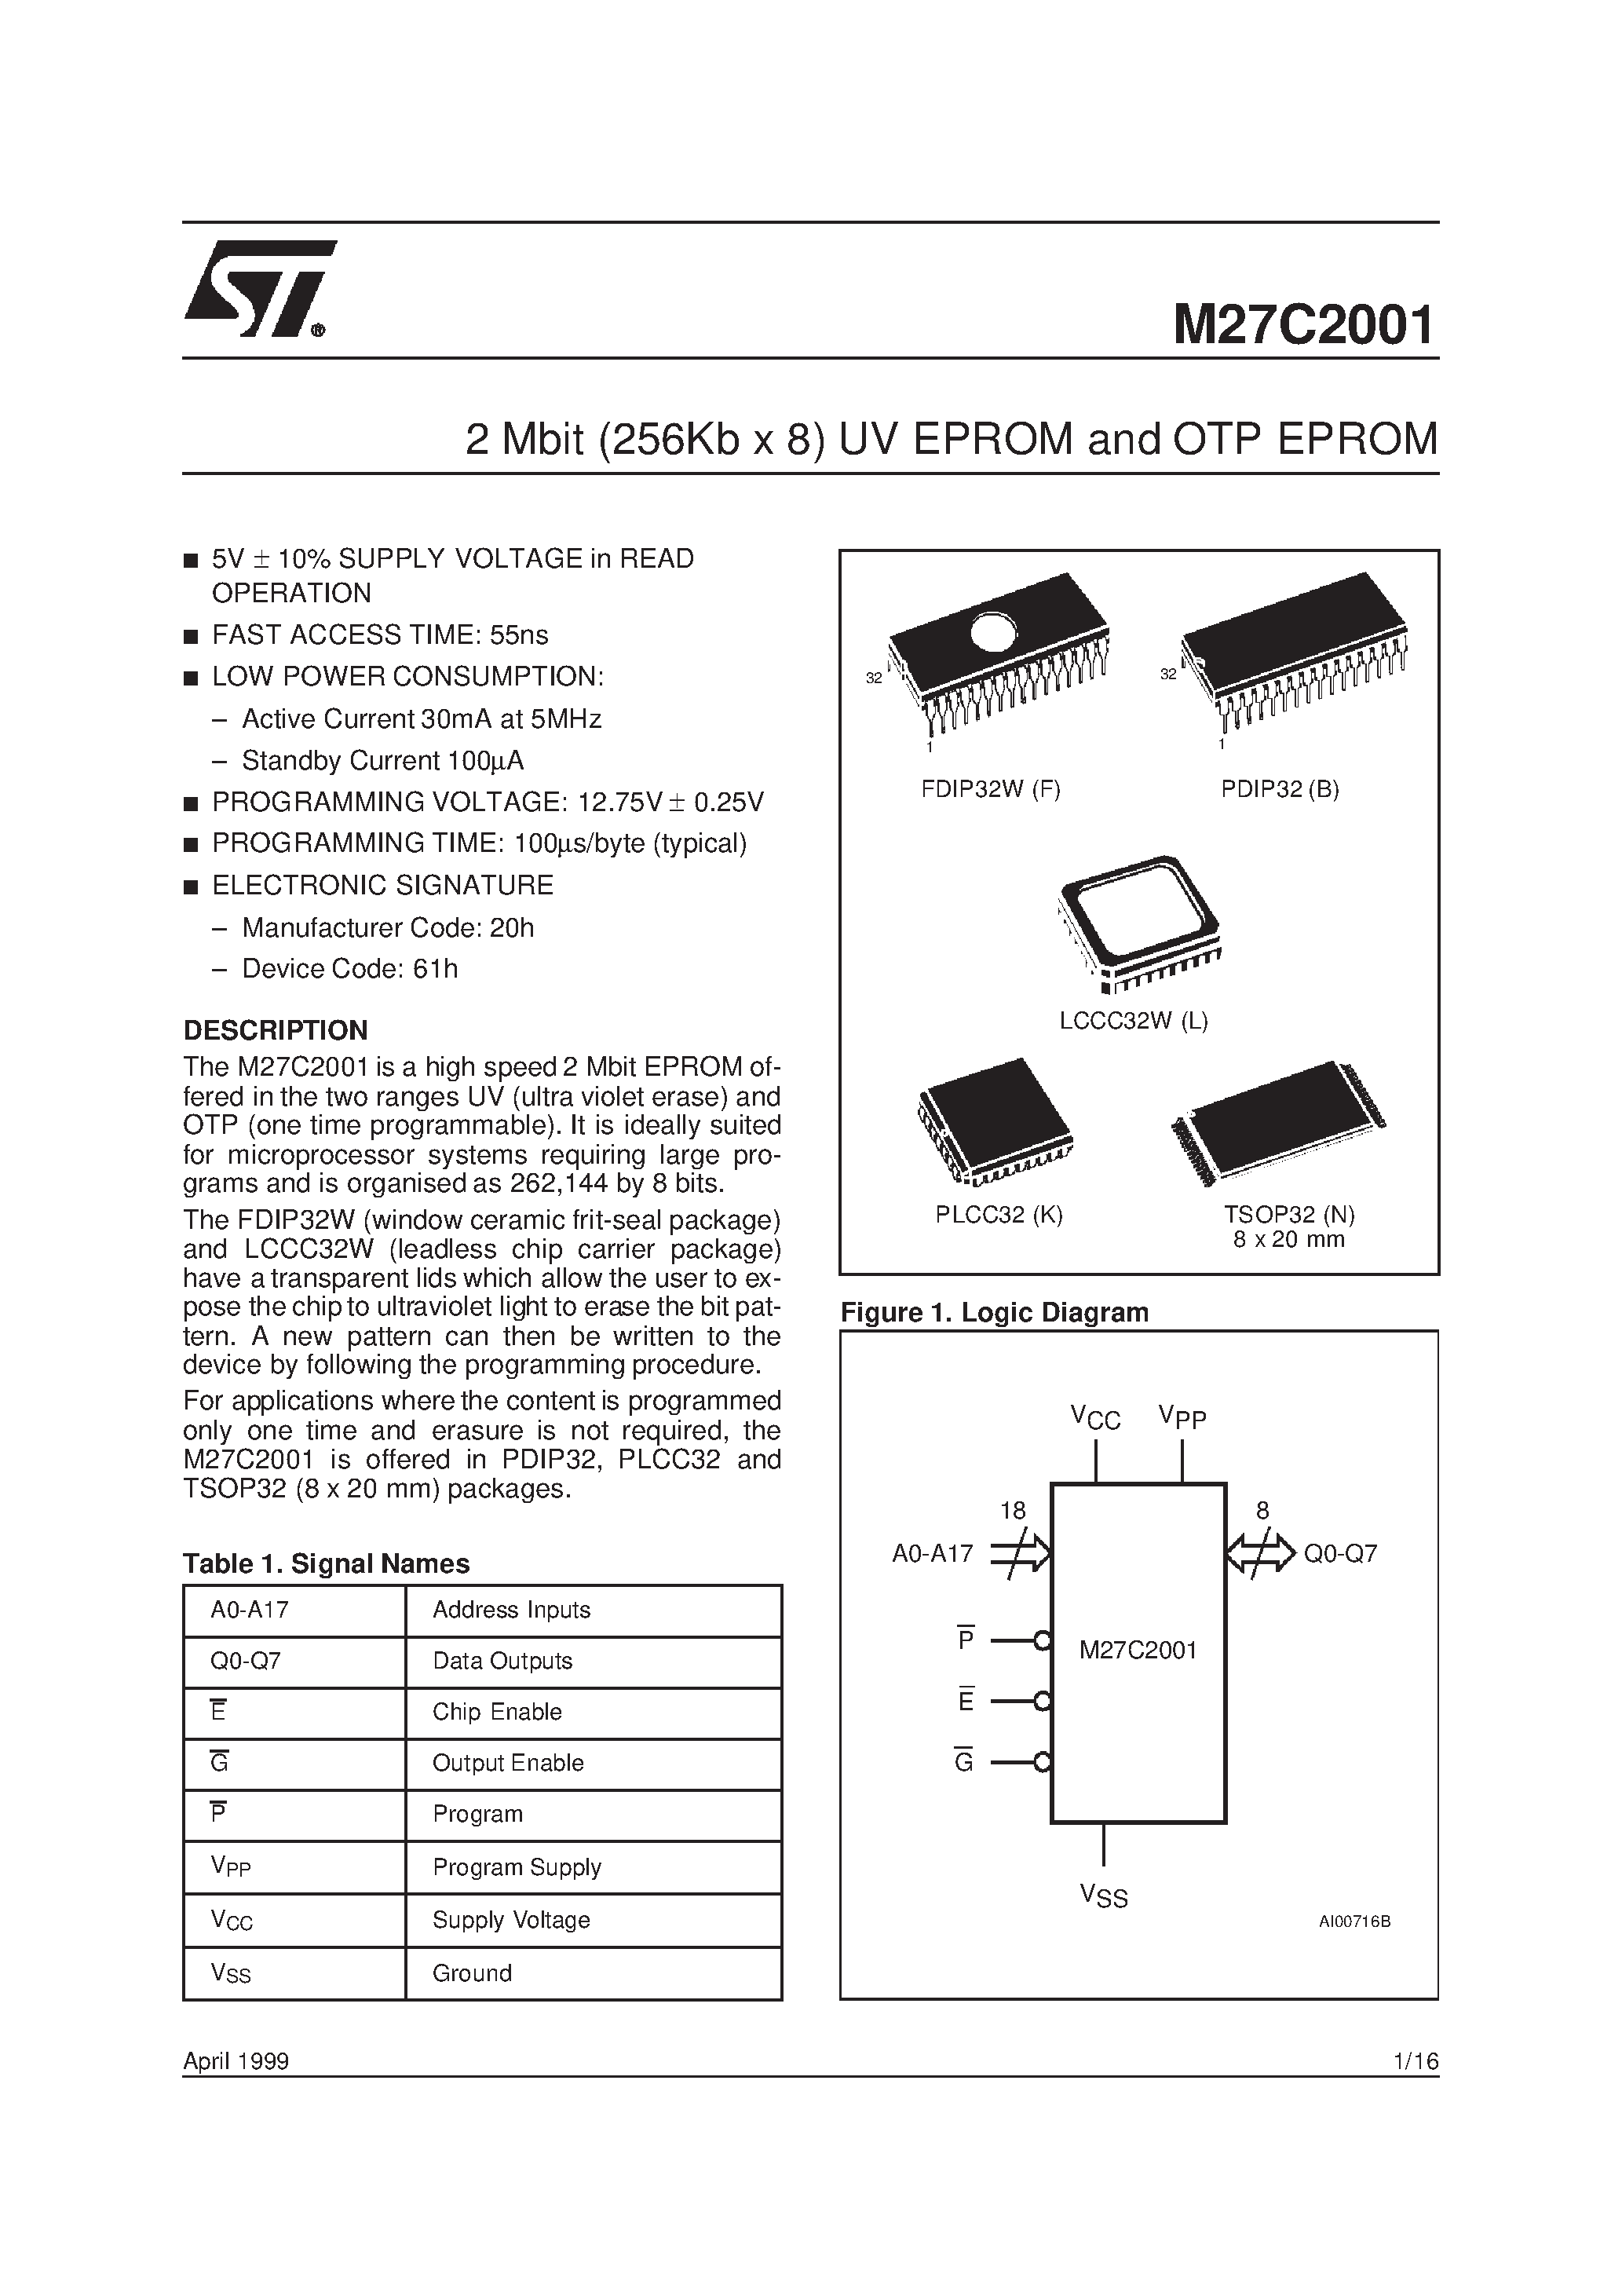 Datasheet M27C2001-10C6TR - 2 Mbit 256Kb x 8 UV EPROM and OTP EPROM page 1